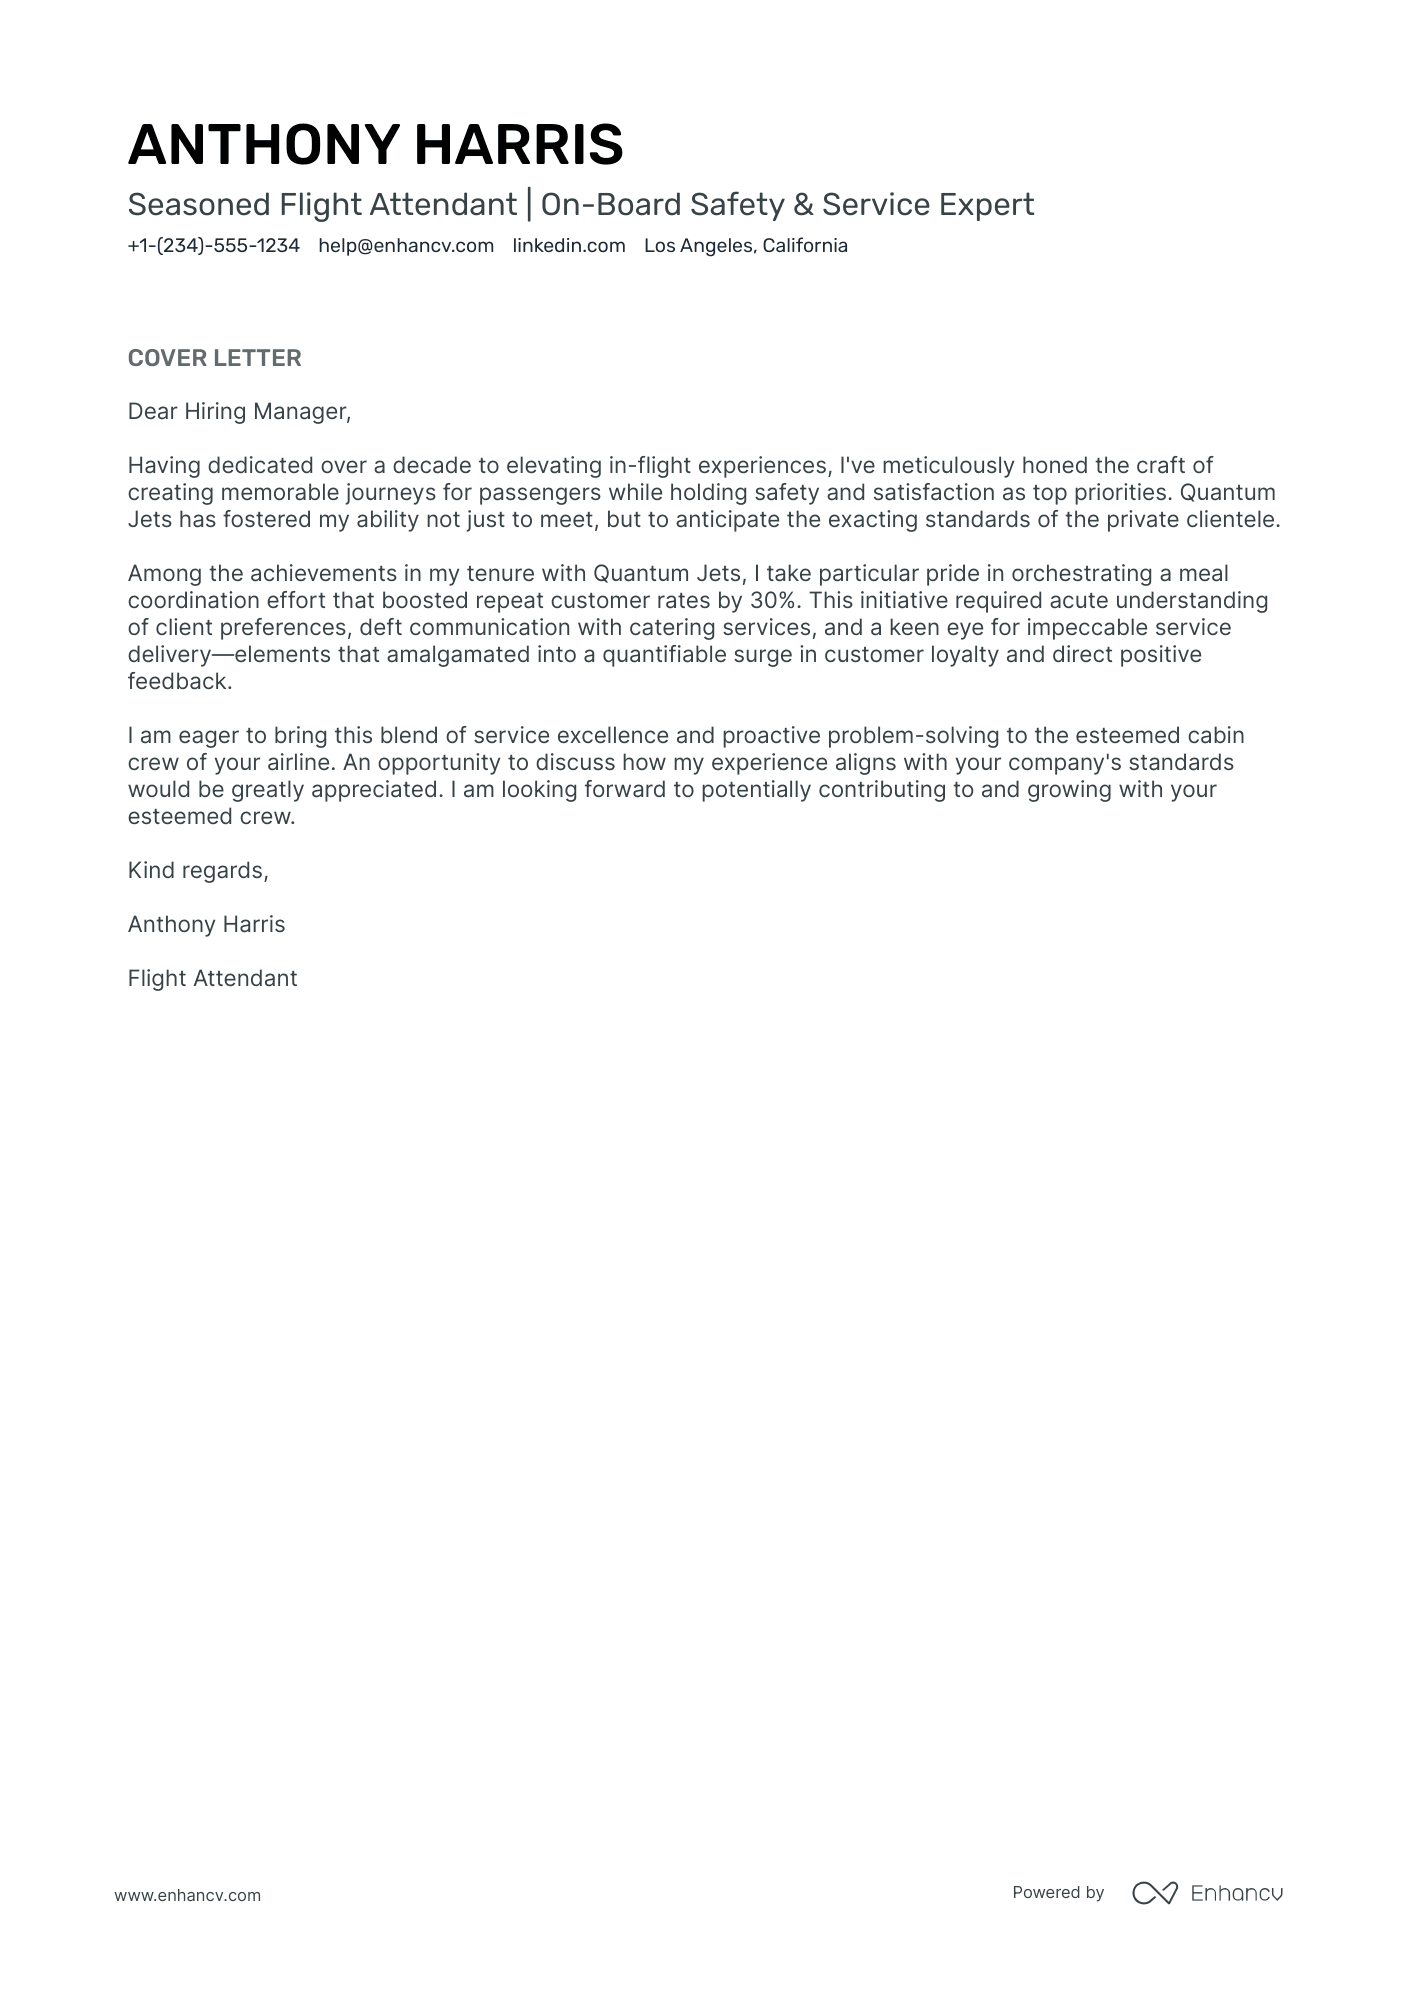 application letter example for flight attendant